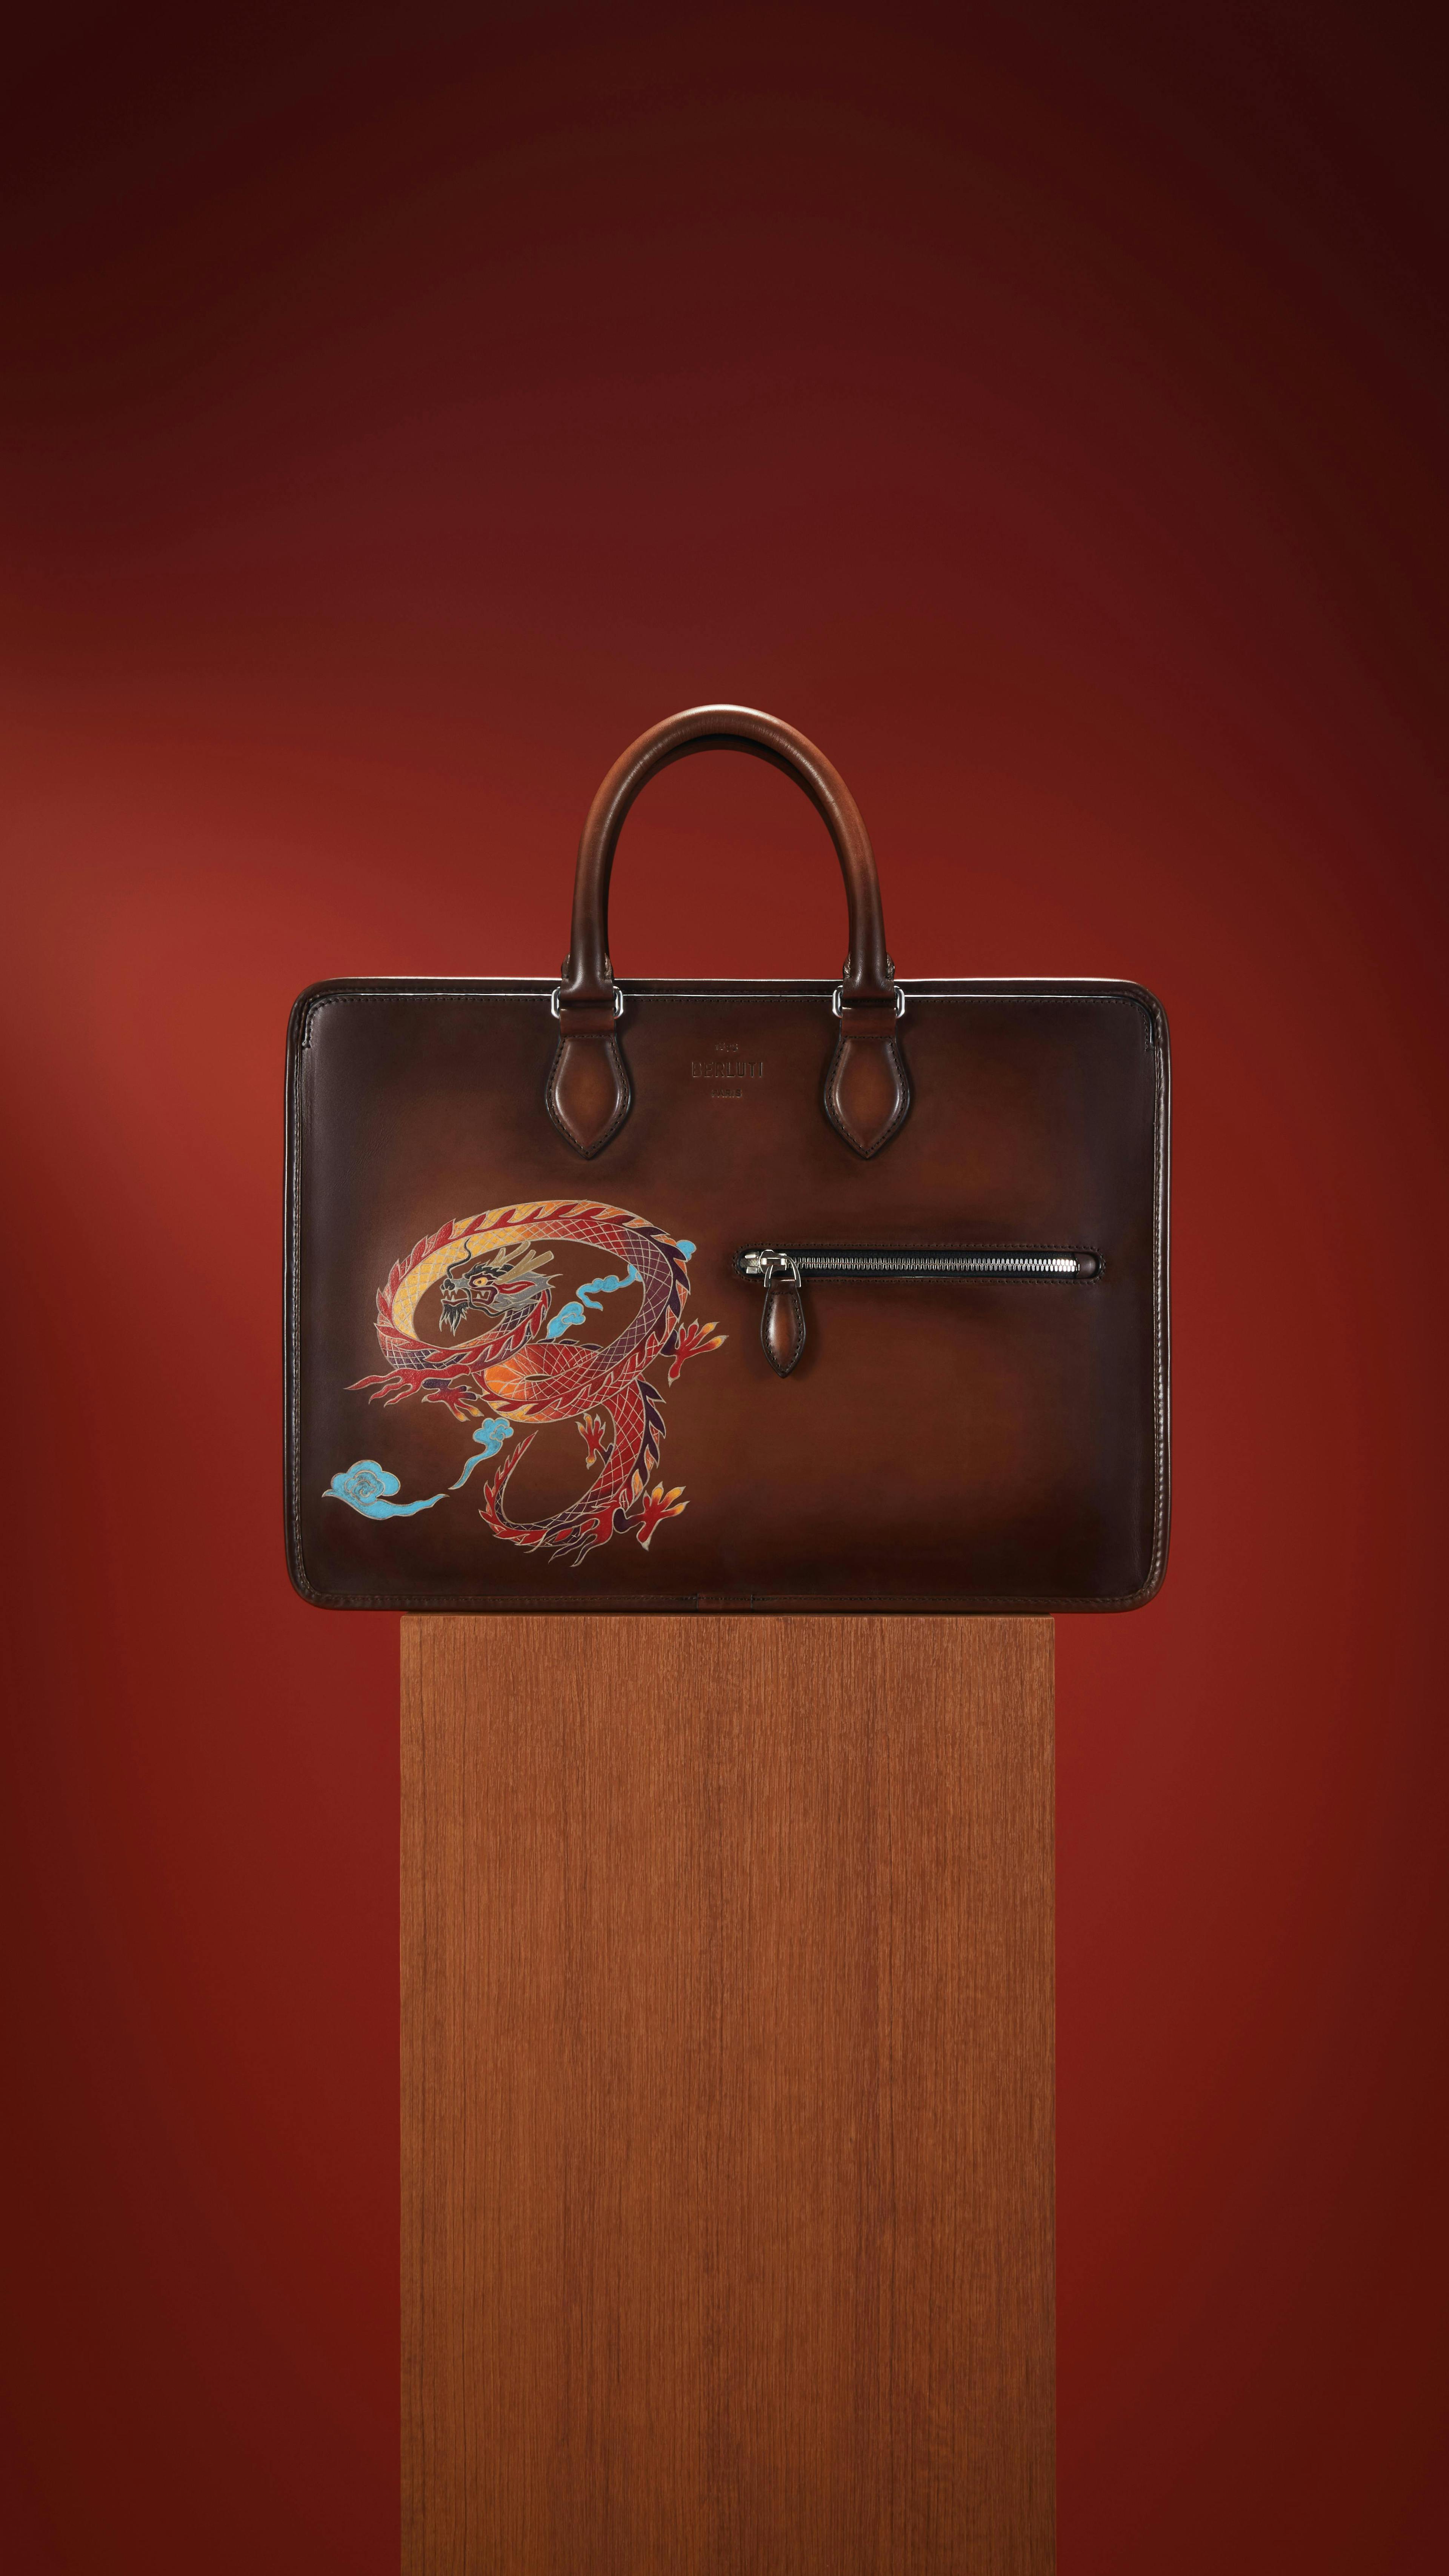 bag accessories handbag purse briefcase